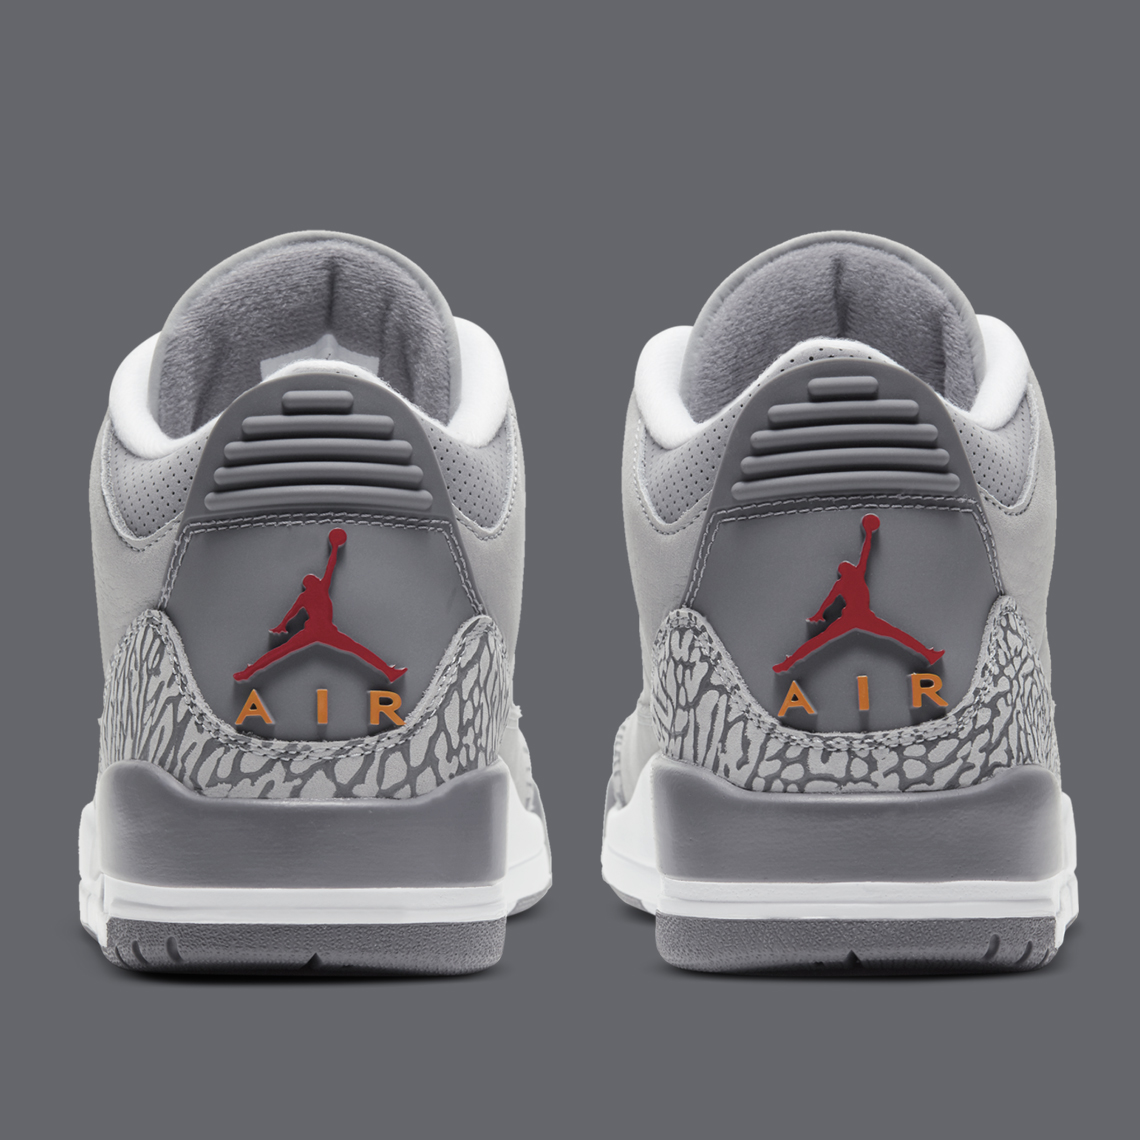 Air Jordan 3 Retro Cool Grey Ct8532 012 Official Images 1